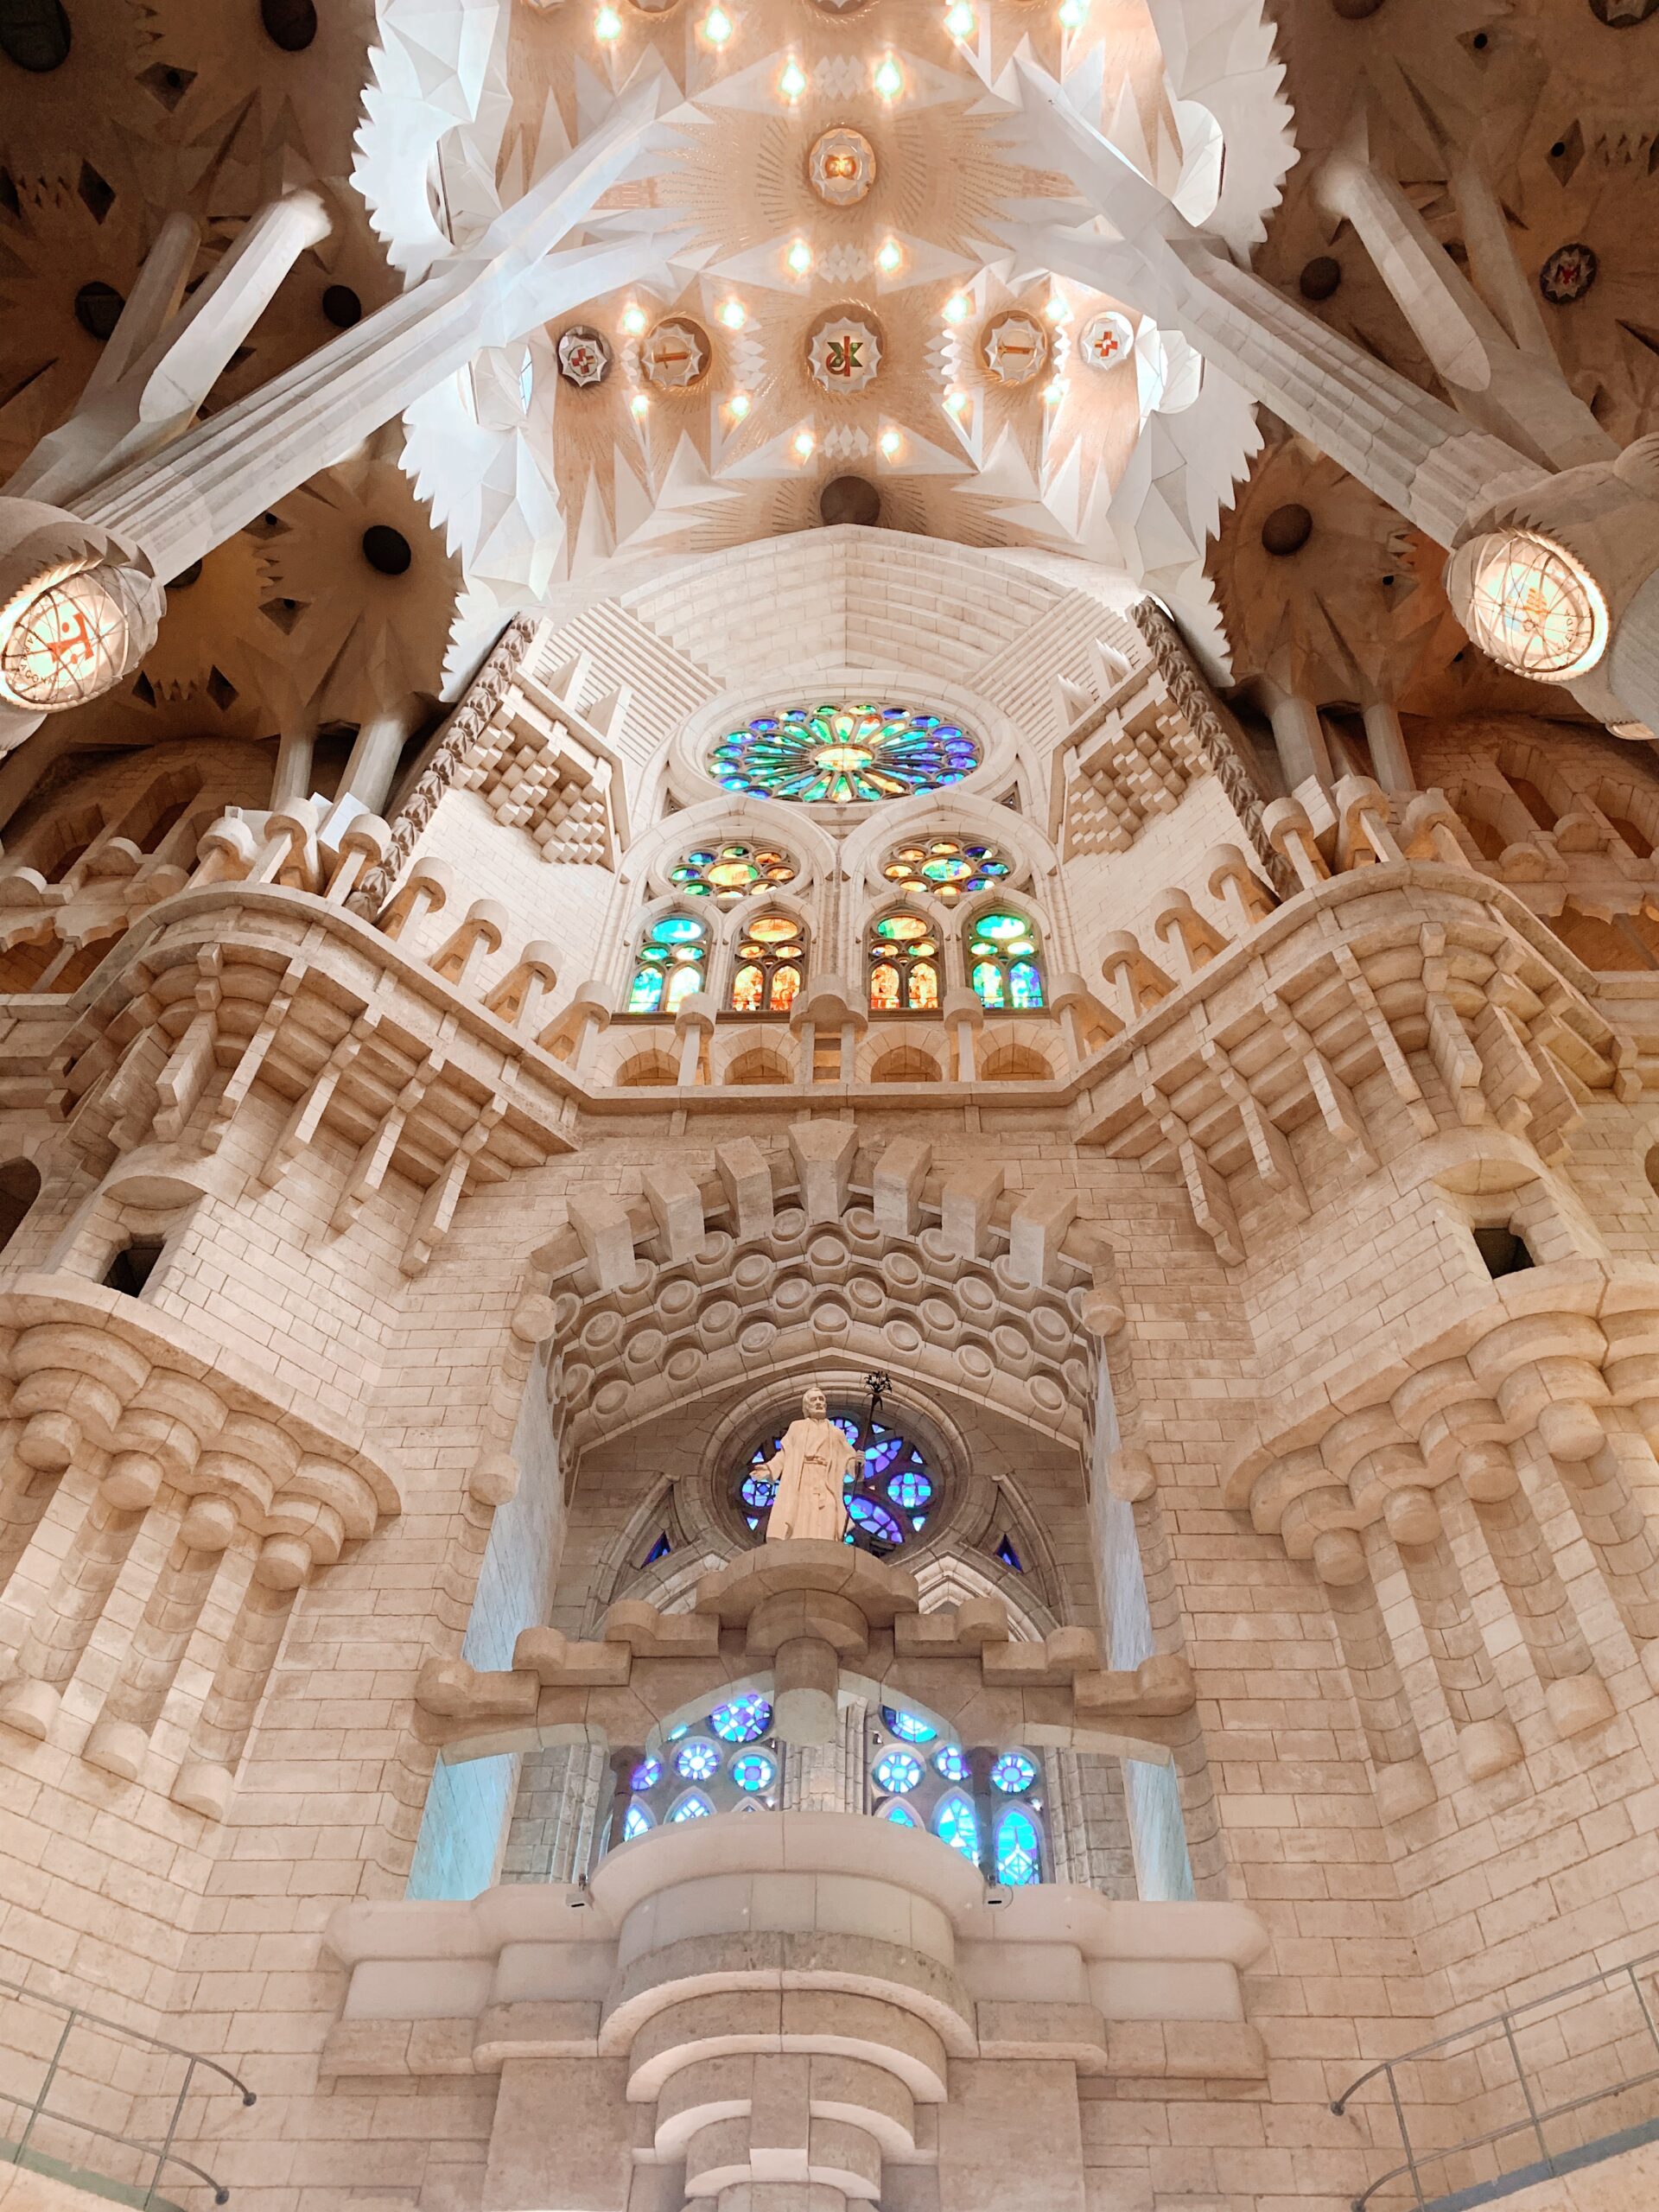 Indrukwekkend en overweldigend: een bezoek aan Sagrada Familia is echt een aanrader